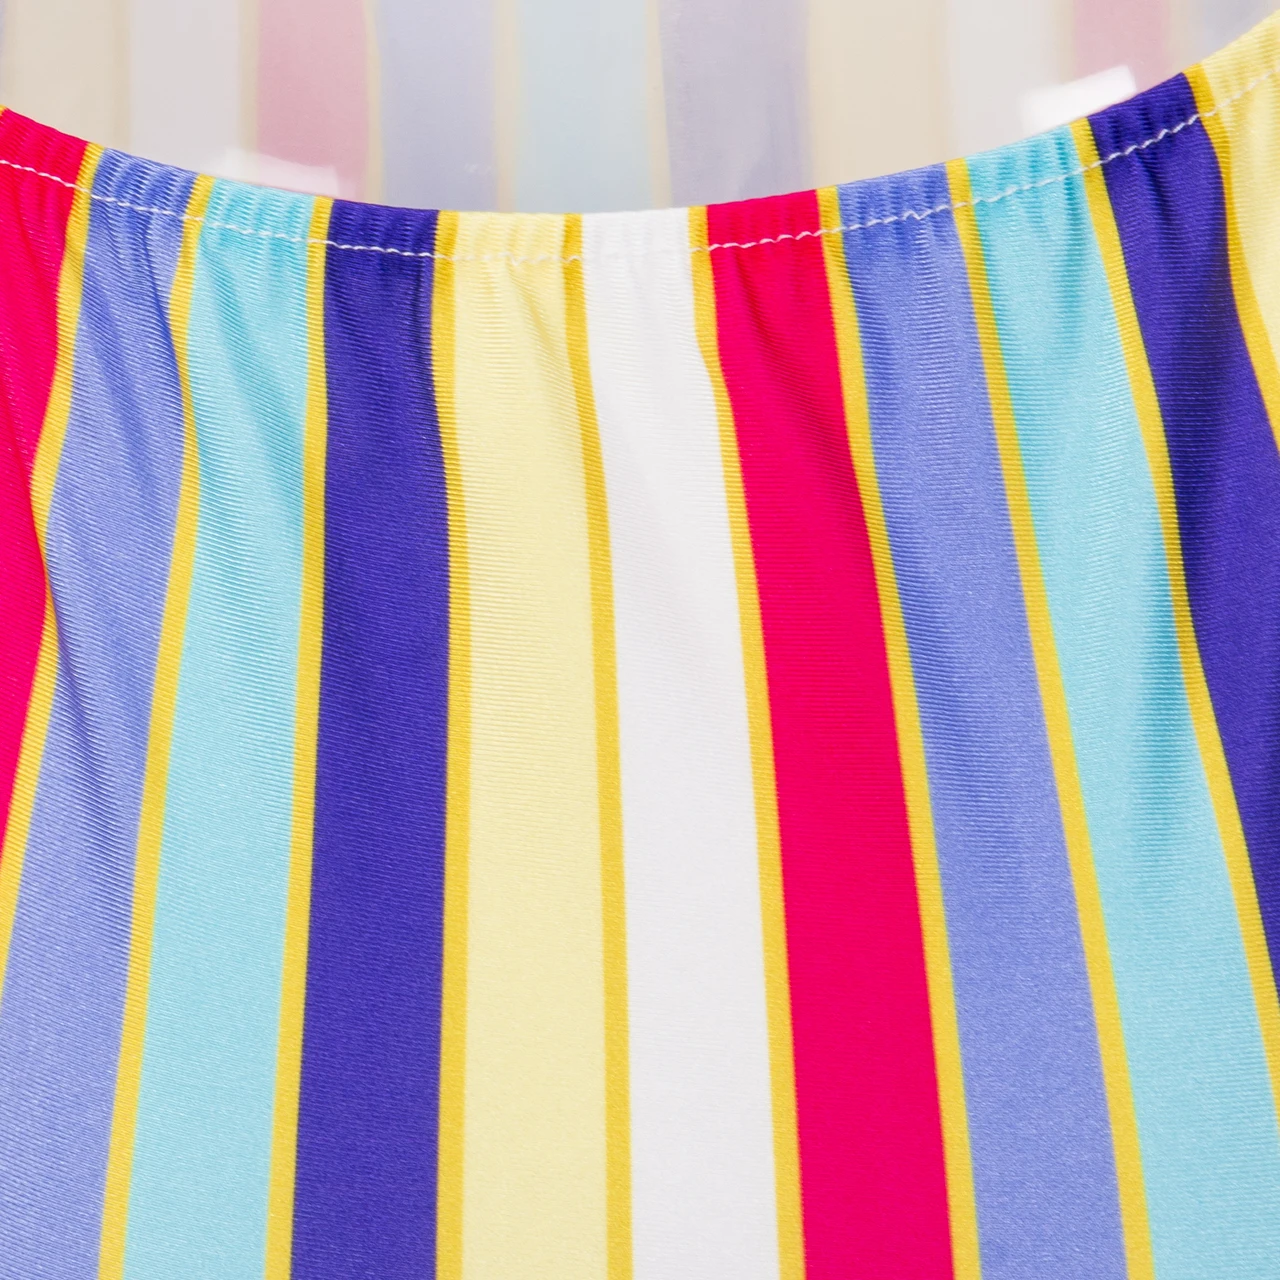 UK женский слитный бикини купальник Mutil полосатый пуш-ап Мягкий купальник купальный костюм летняя пляжная одежда